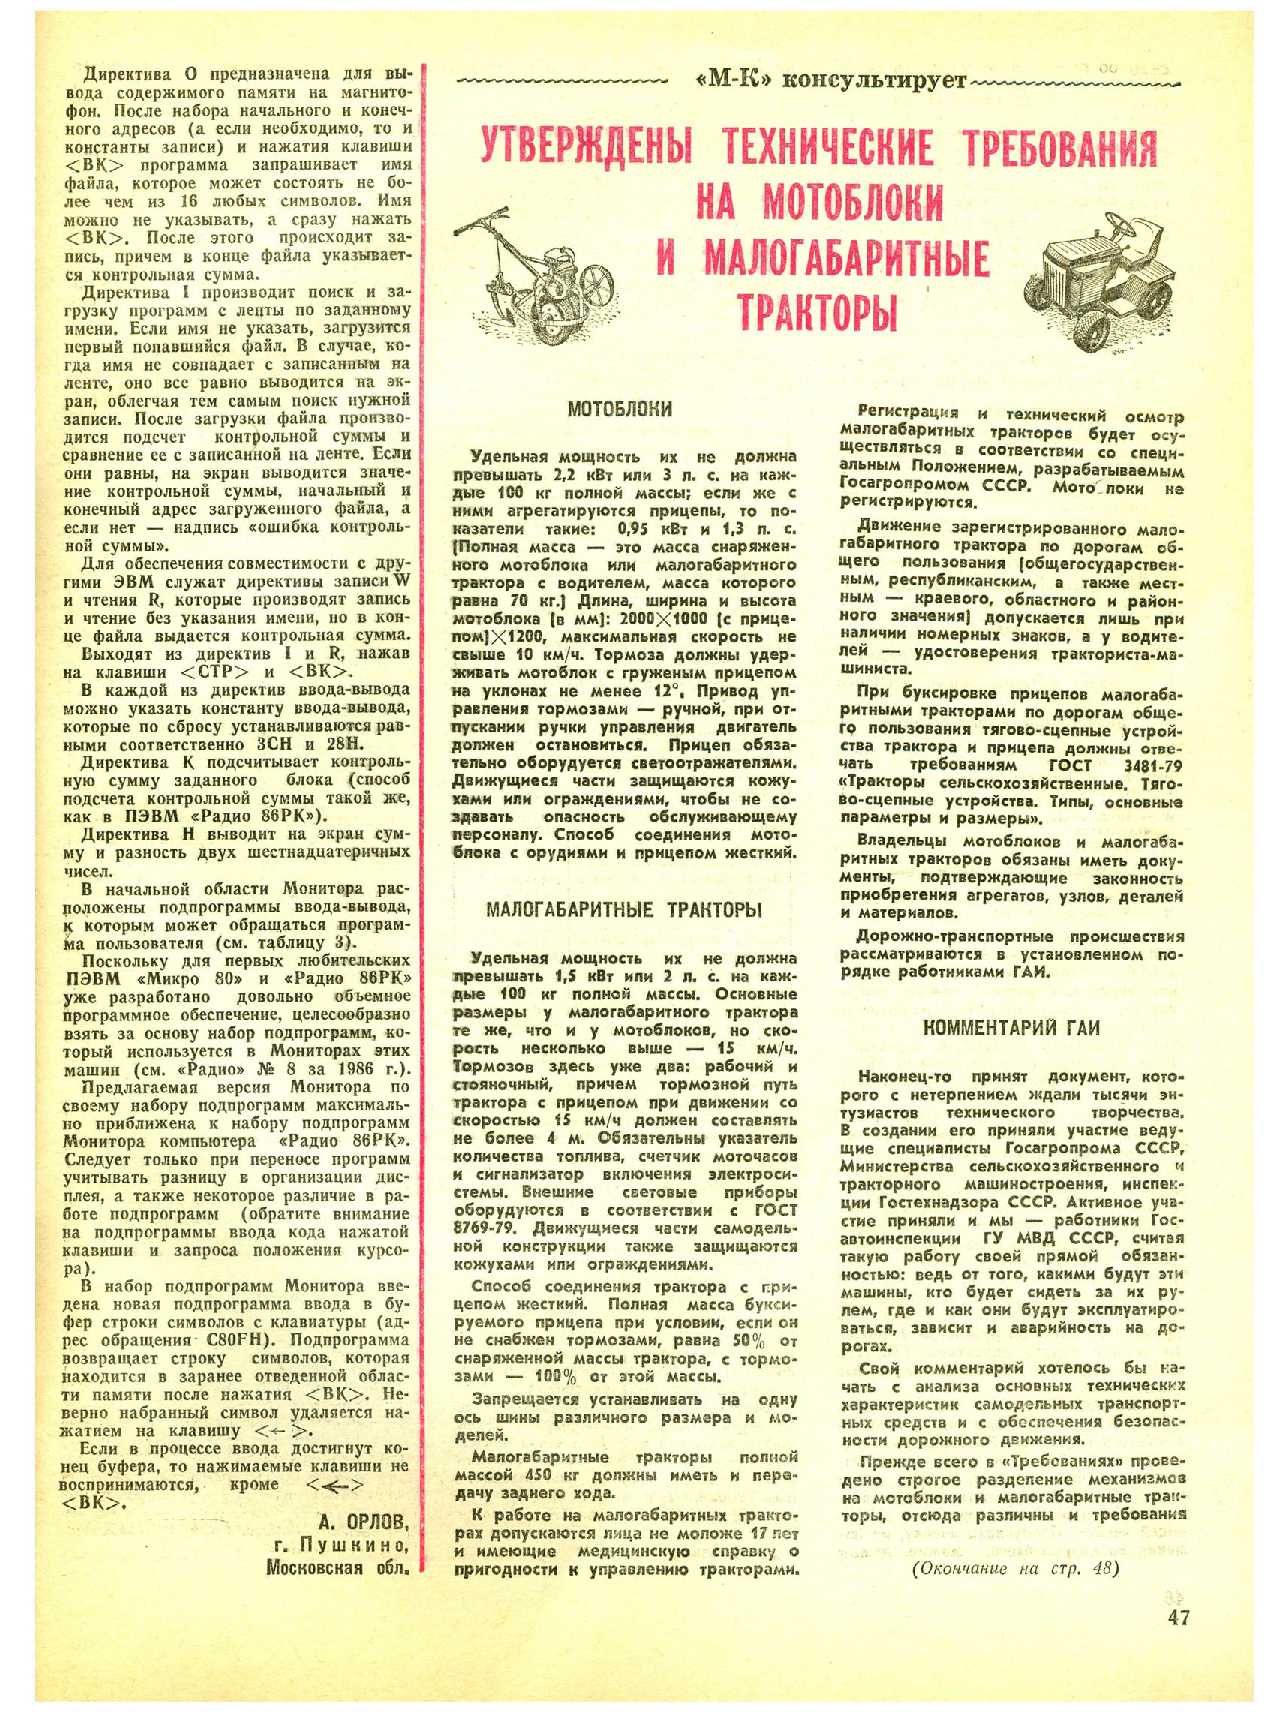 МК 9, 1988, 47 c.